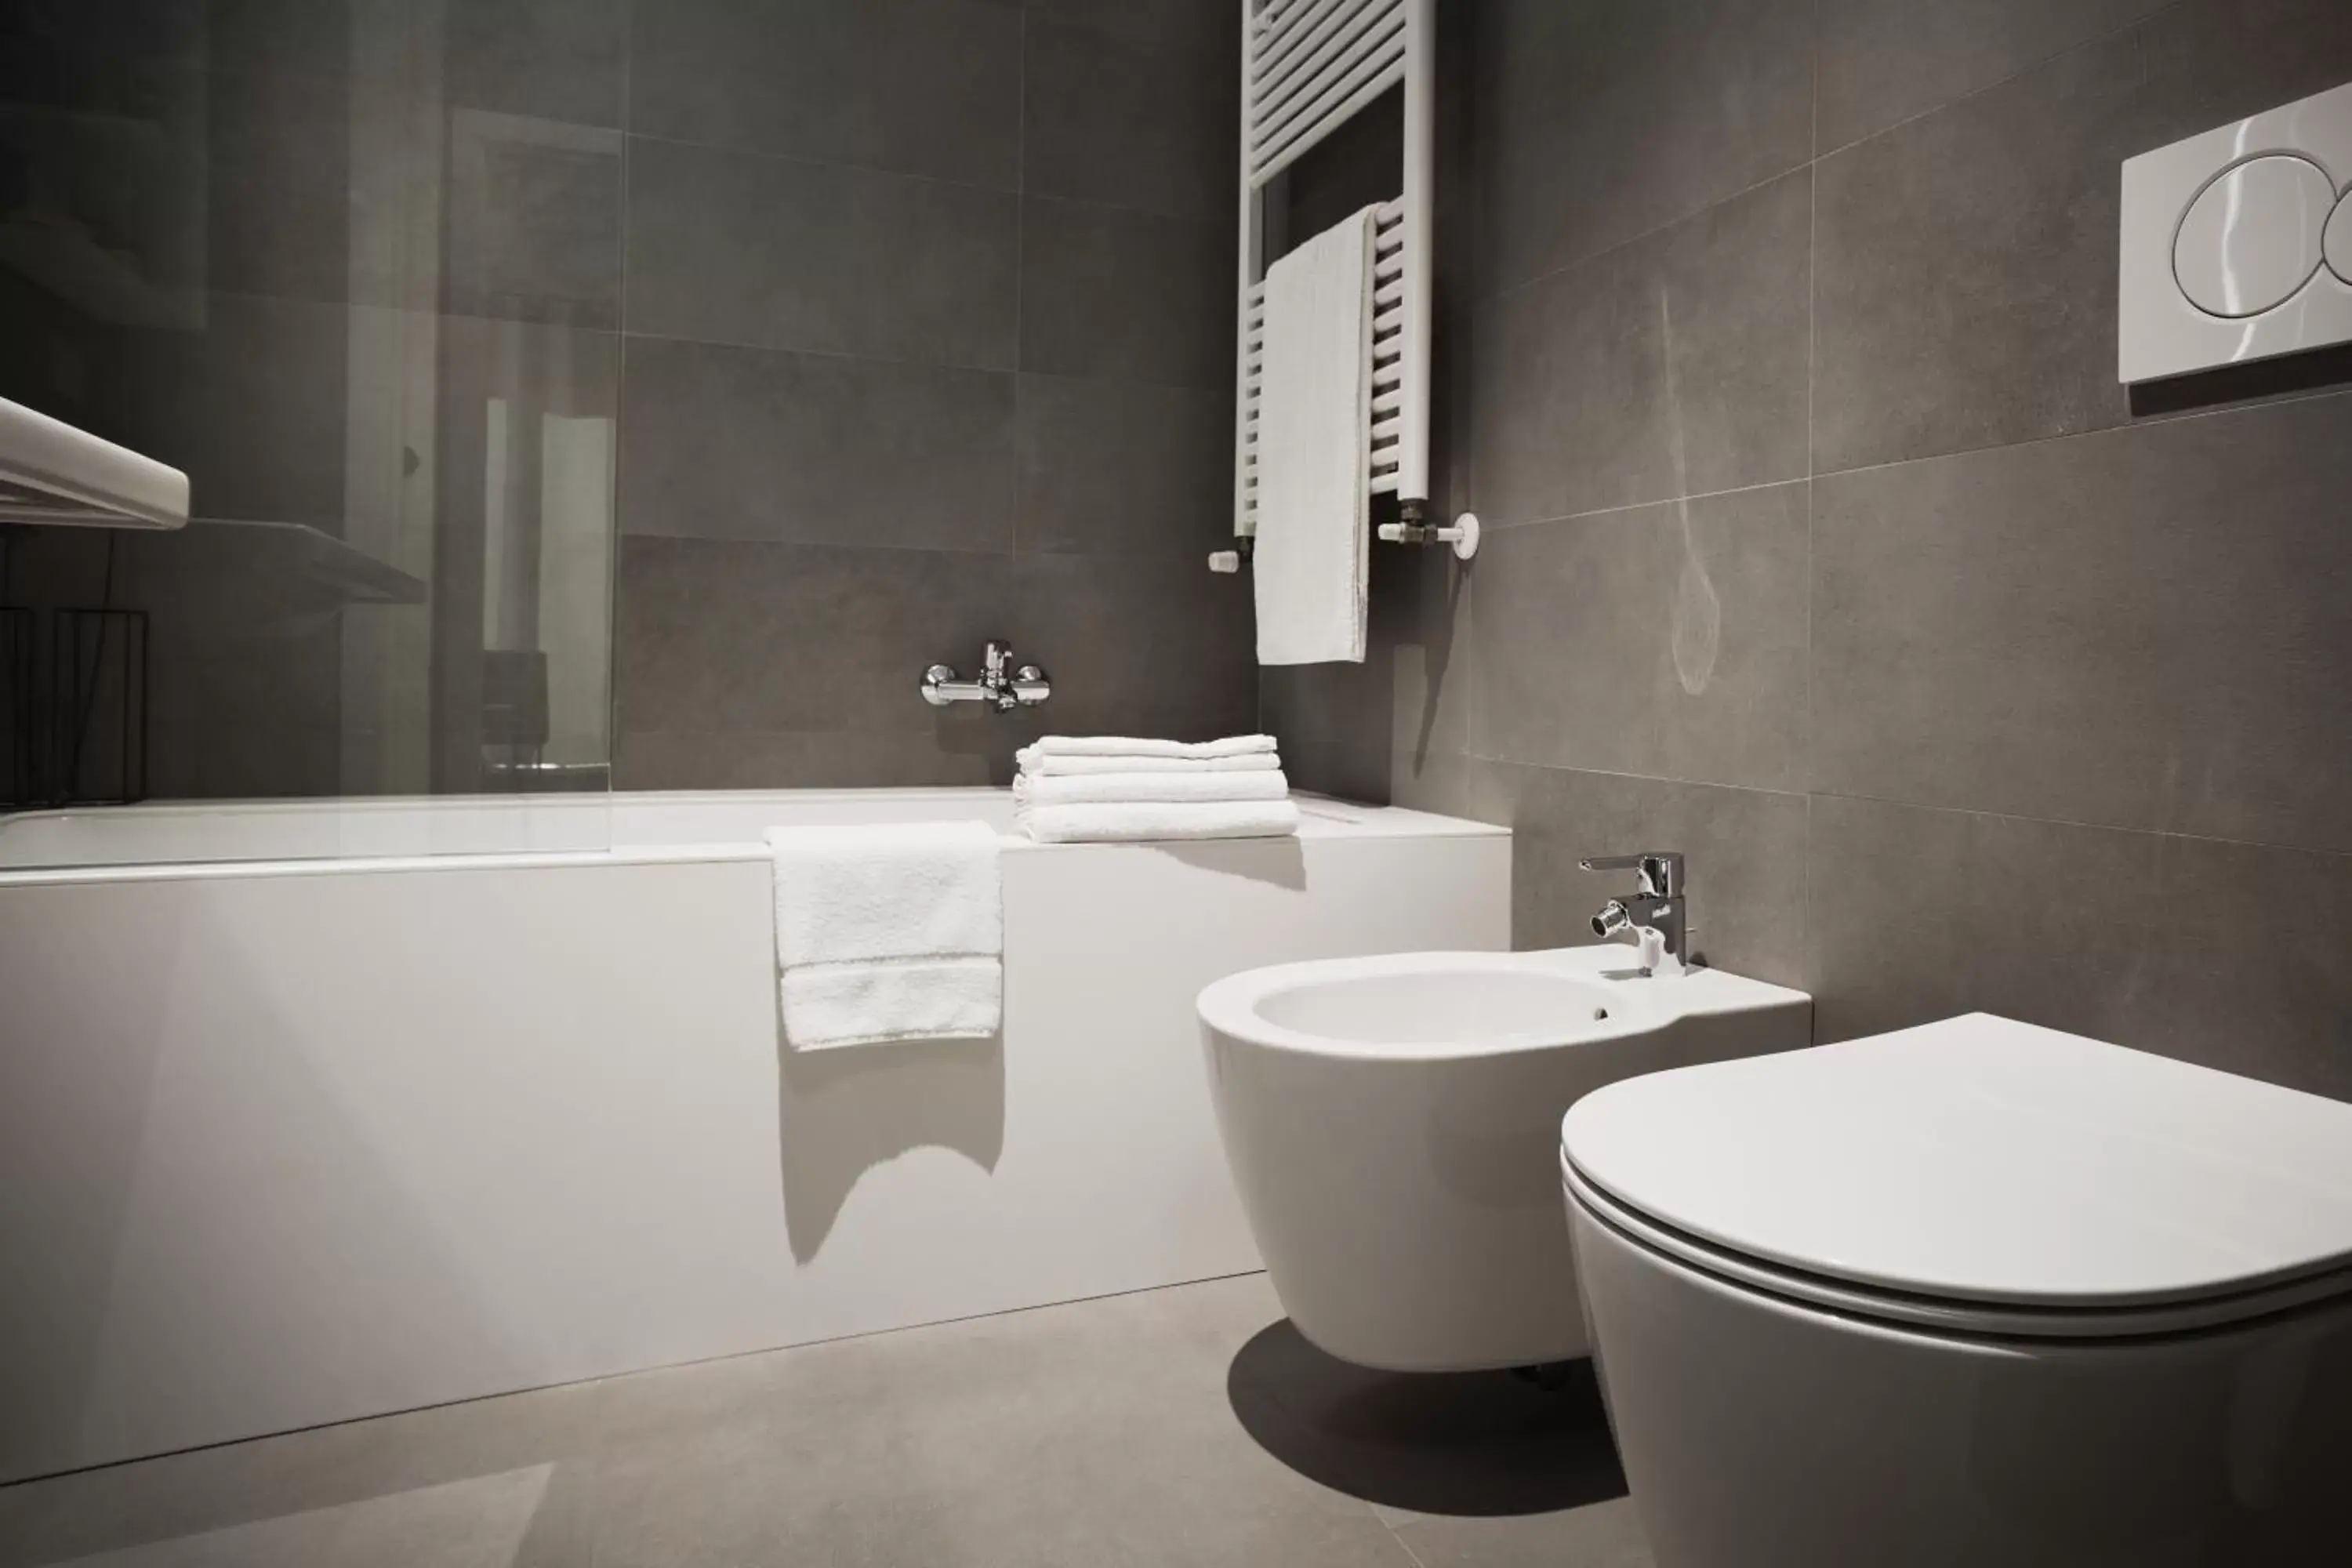 Bathroom in Dreams Hotel Città Studi